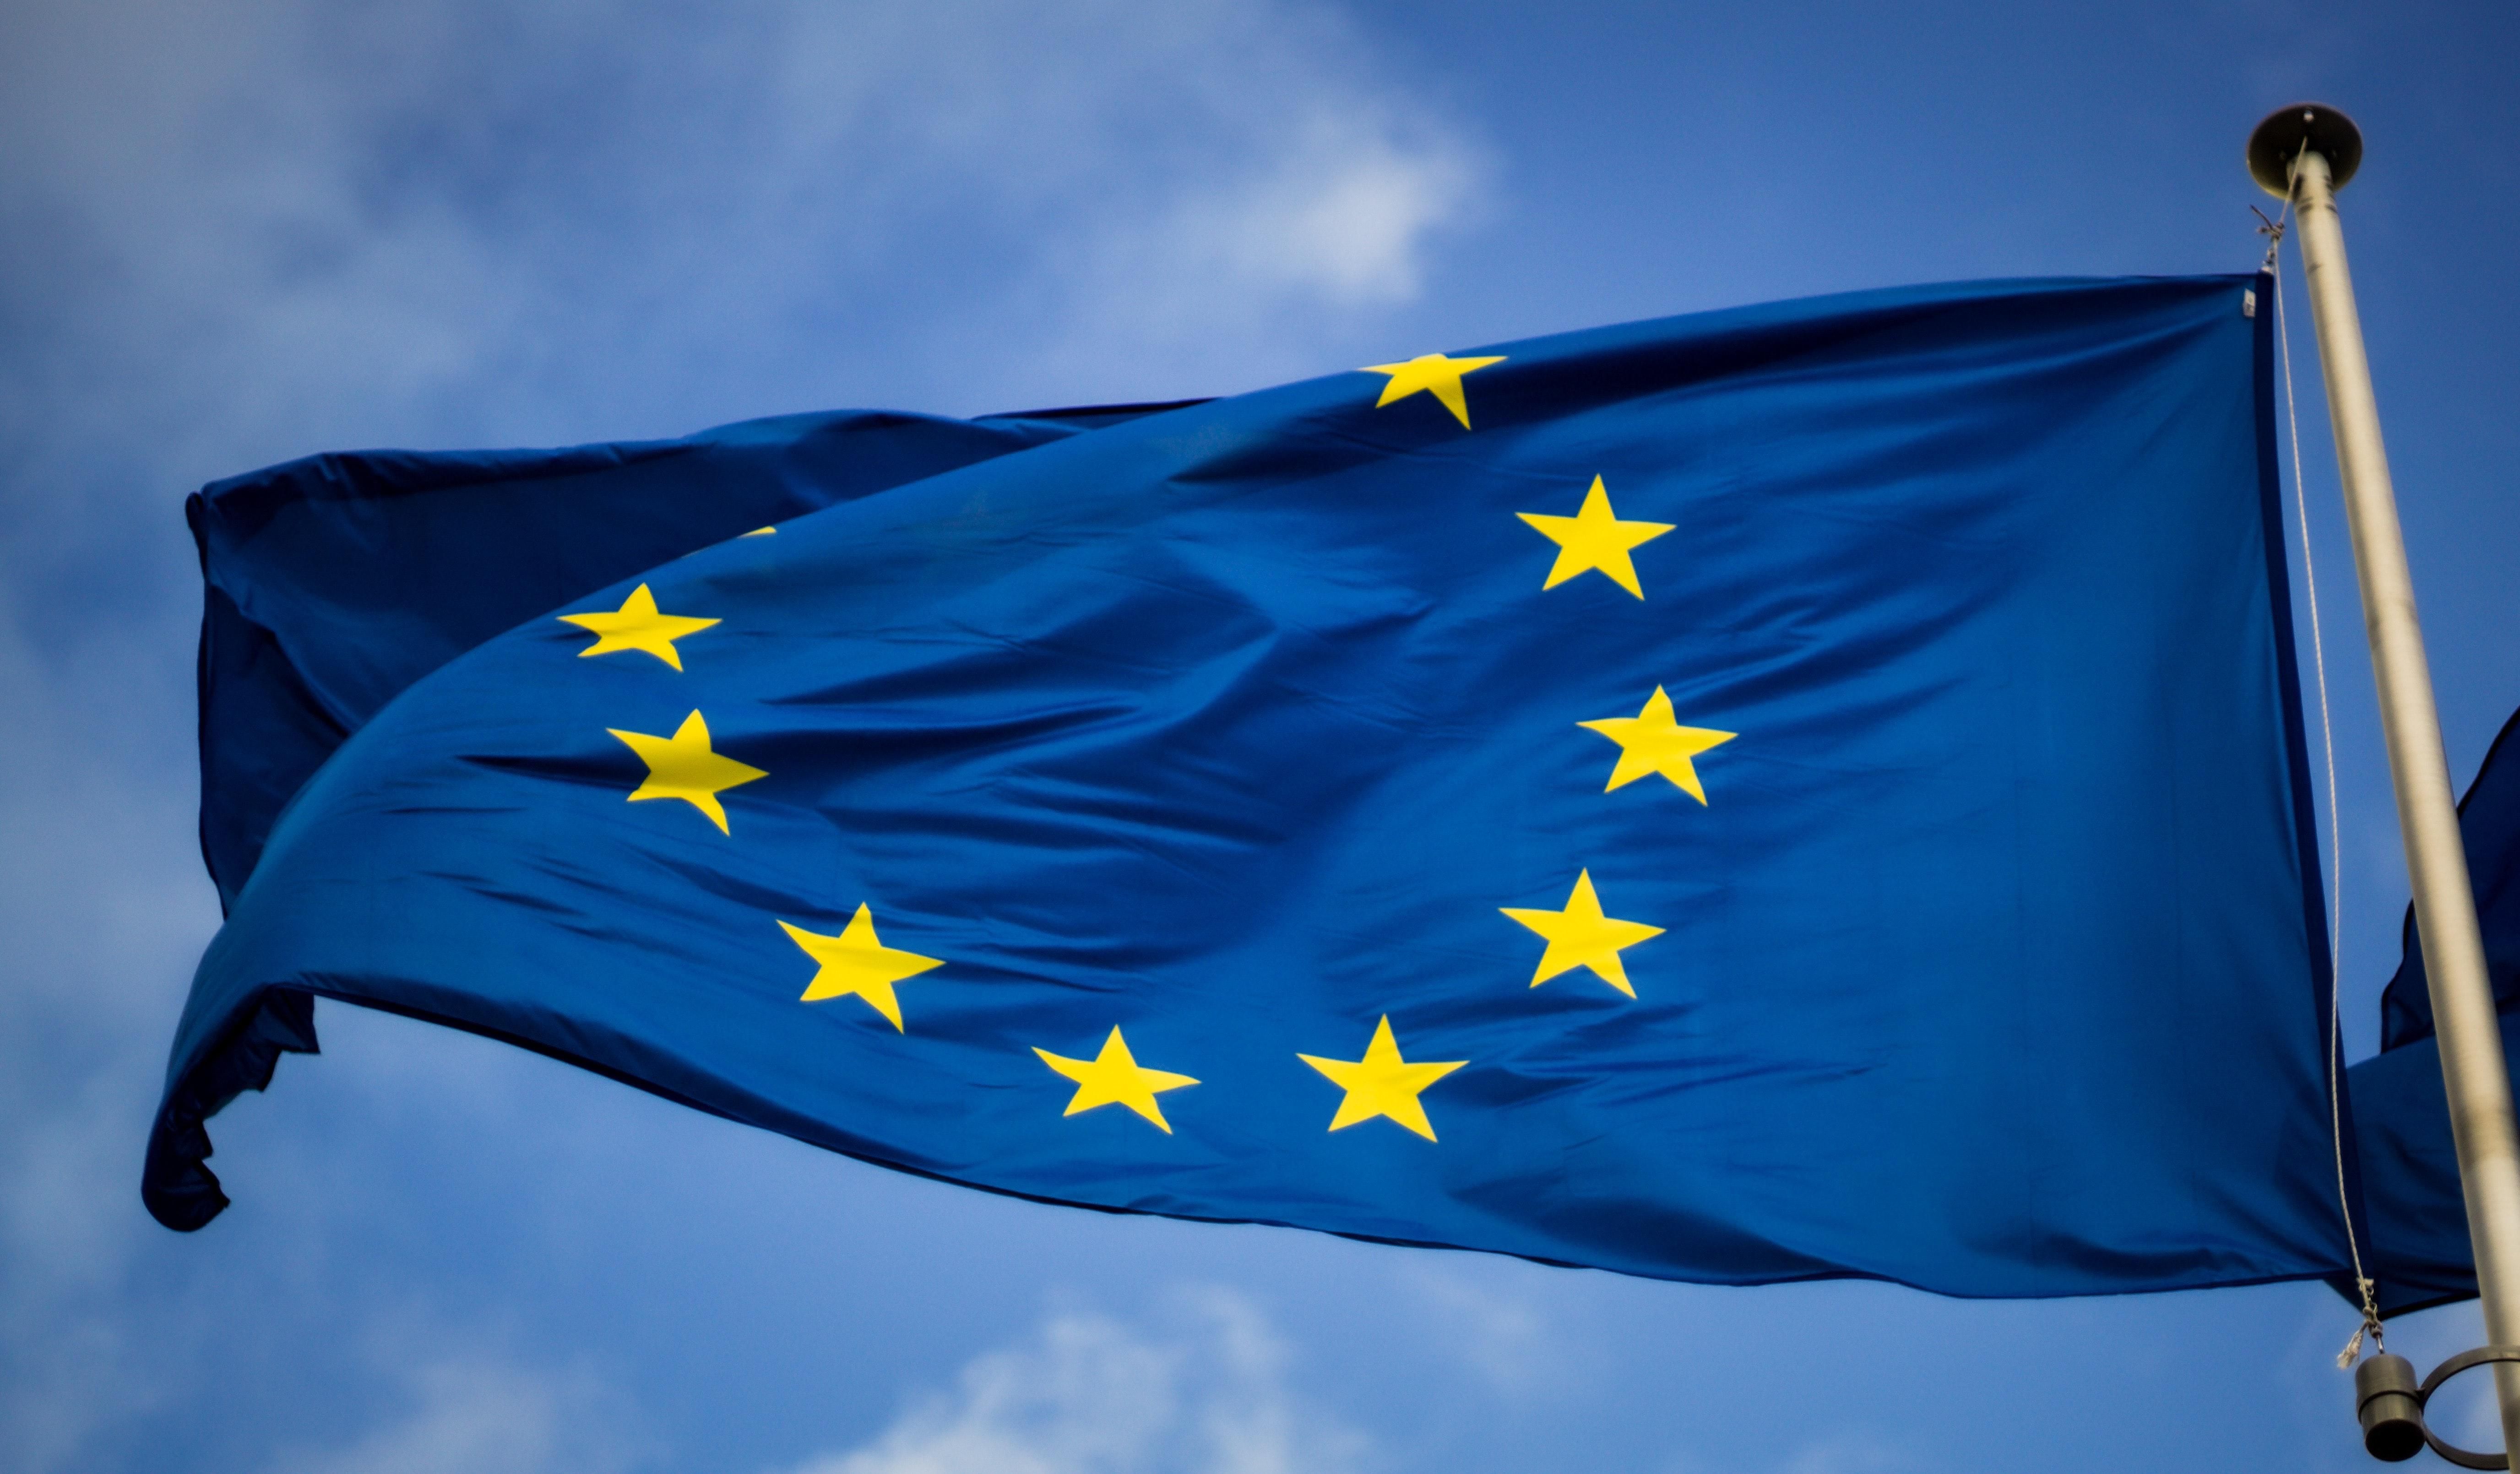 Az Európai Unió zászlója